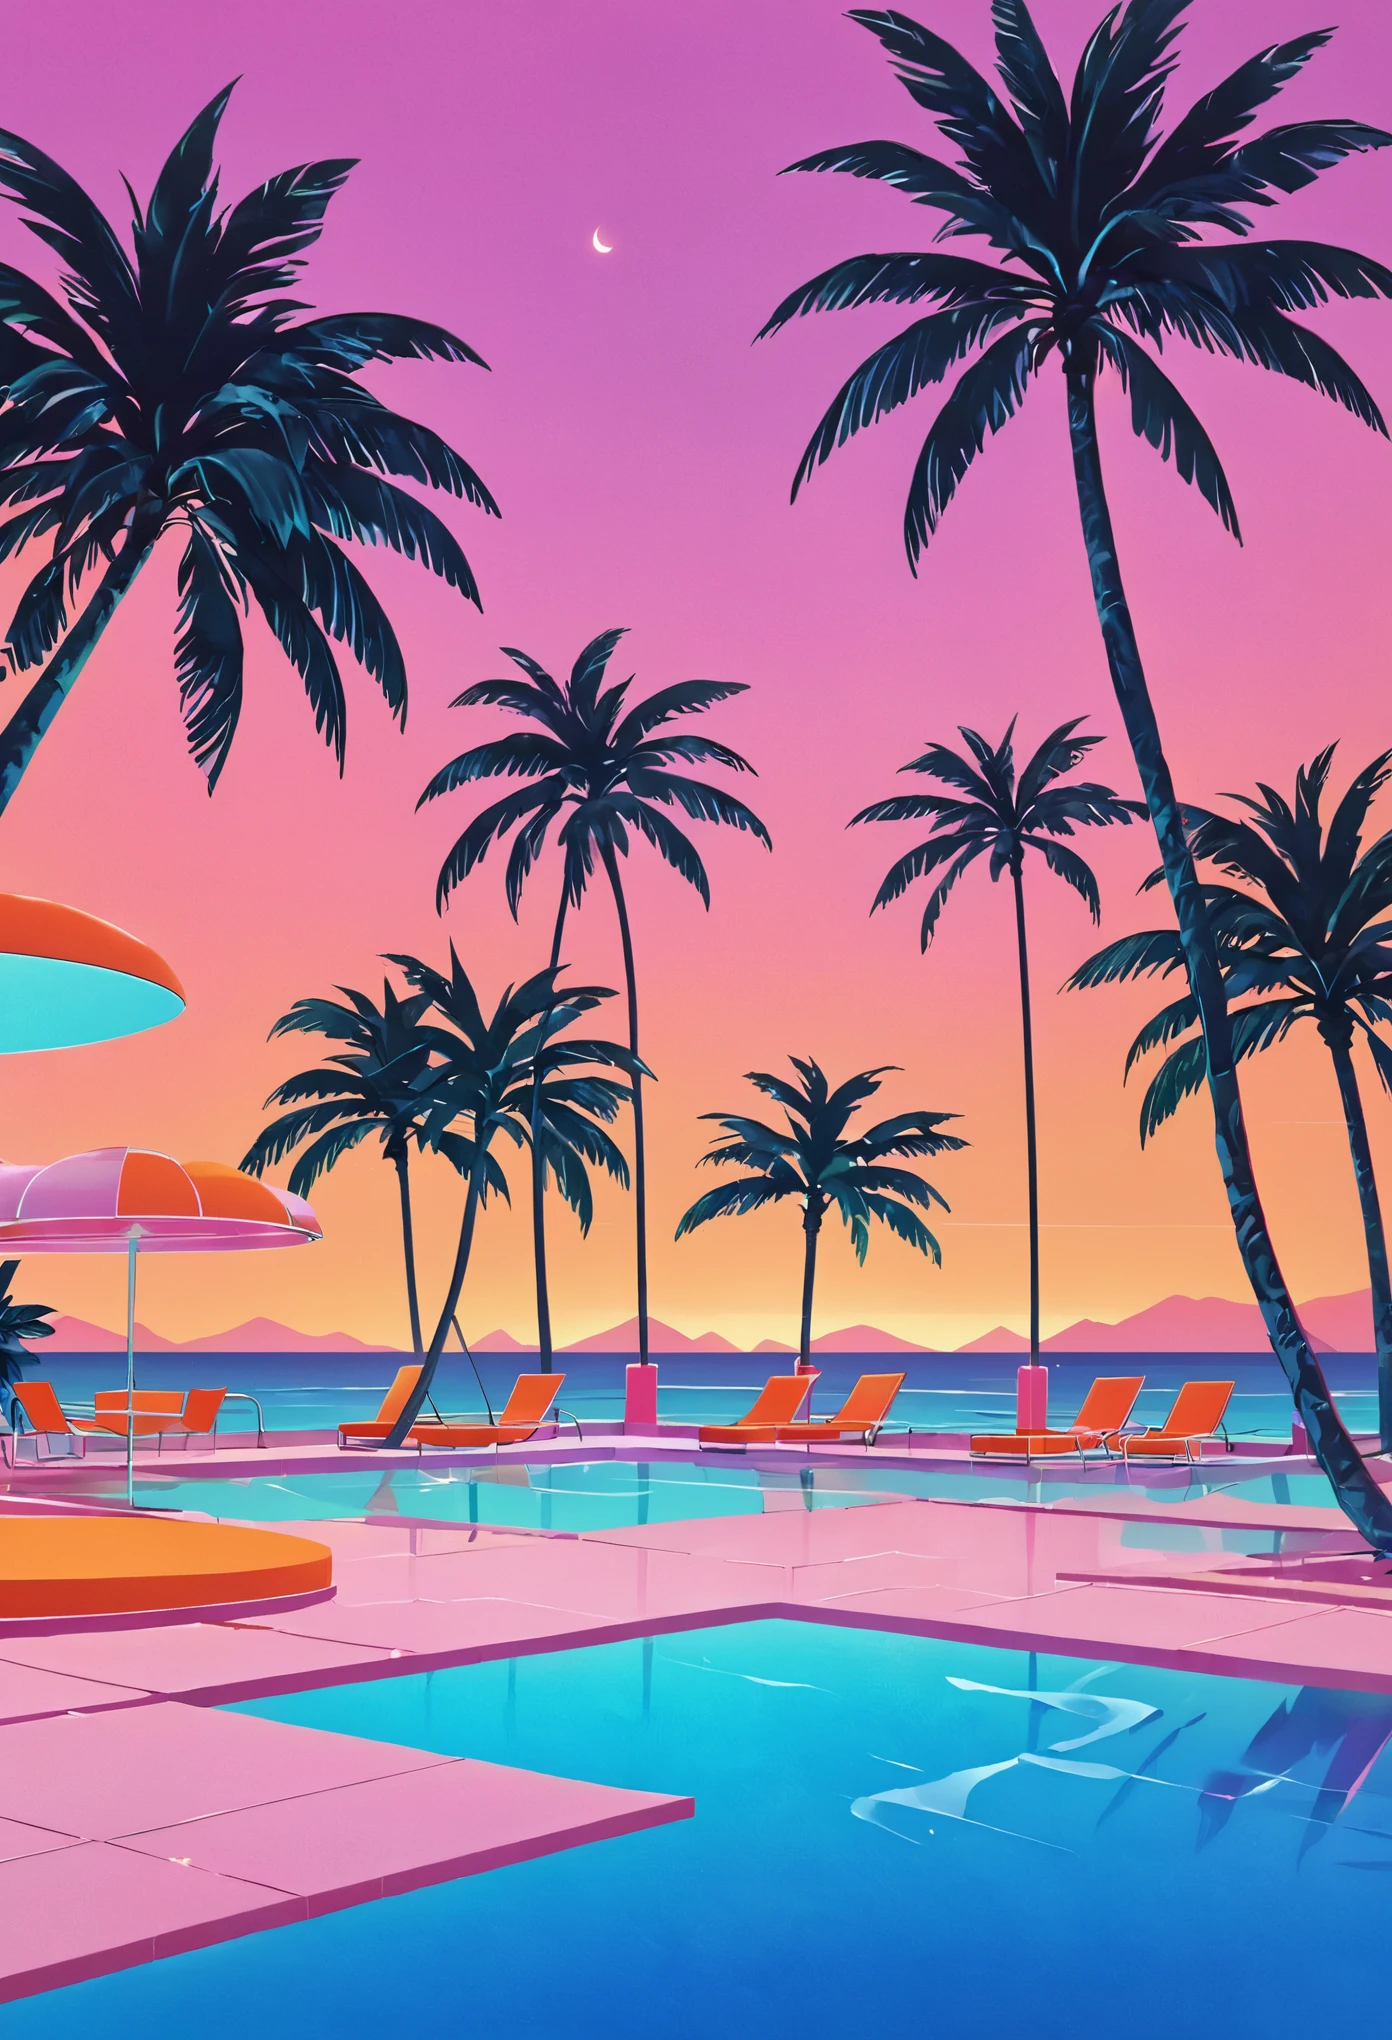 Visualize uma obra de arte profundamente imersa na estética das ondas de vapor dos anos 80, inspirado no estilo vibrante de Yoko Honda. Imagine uma piscina retro-futurista e uma cena de praia ao pôr do sol, onde o céu brilha com os tons quentes de um pôr do sol de verão dos anos 80 – laranjas intensas, rosa, e vermelhos refletindo nas águas tranquilas do mar e da piscina. Ao redor da piscina, palmeiras e coqueiros iluminados por neon balançam suavemente, realçando a atmosfera tropical e surreal. Luzes de néon em padrões geométricos iluminam a cena, lançando um brilho onírico sobre tudo. O fundo apresenta um bar chique à beira-mar com interiores visíveis através de grandes janelas de vidro, apresentando um quarto com paredes em tons pastéis e pisos cobertos por luxuosos mosaicos e texturas de mármore. O ambiente geral combina luxo nostálgico com vibrante, paletas de cores quentes, criando uma cena que é ao mesmo tempo atemporal e distintamente evocativa dos anos 80.